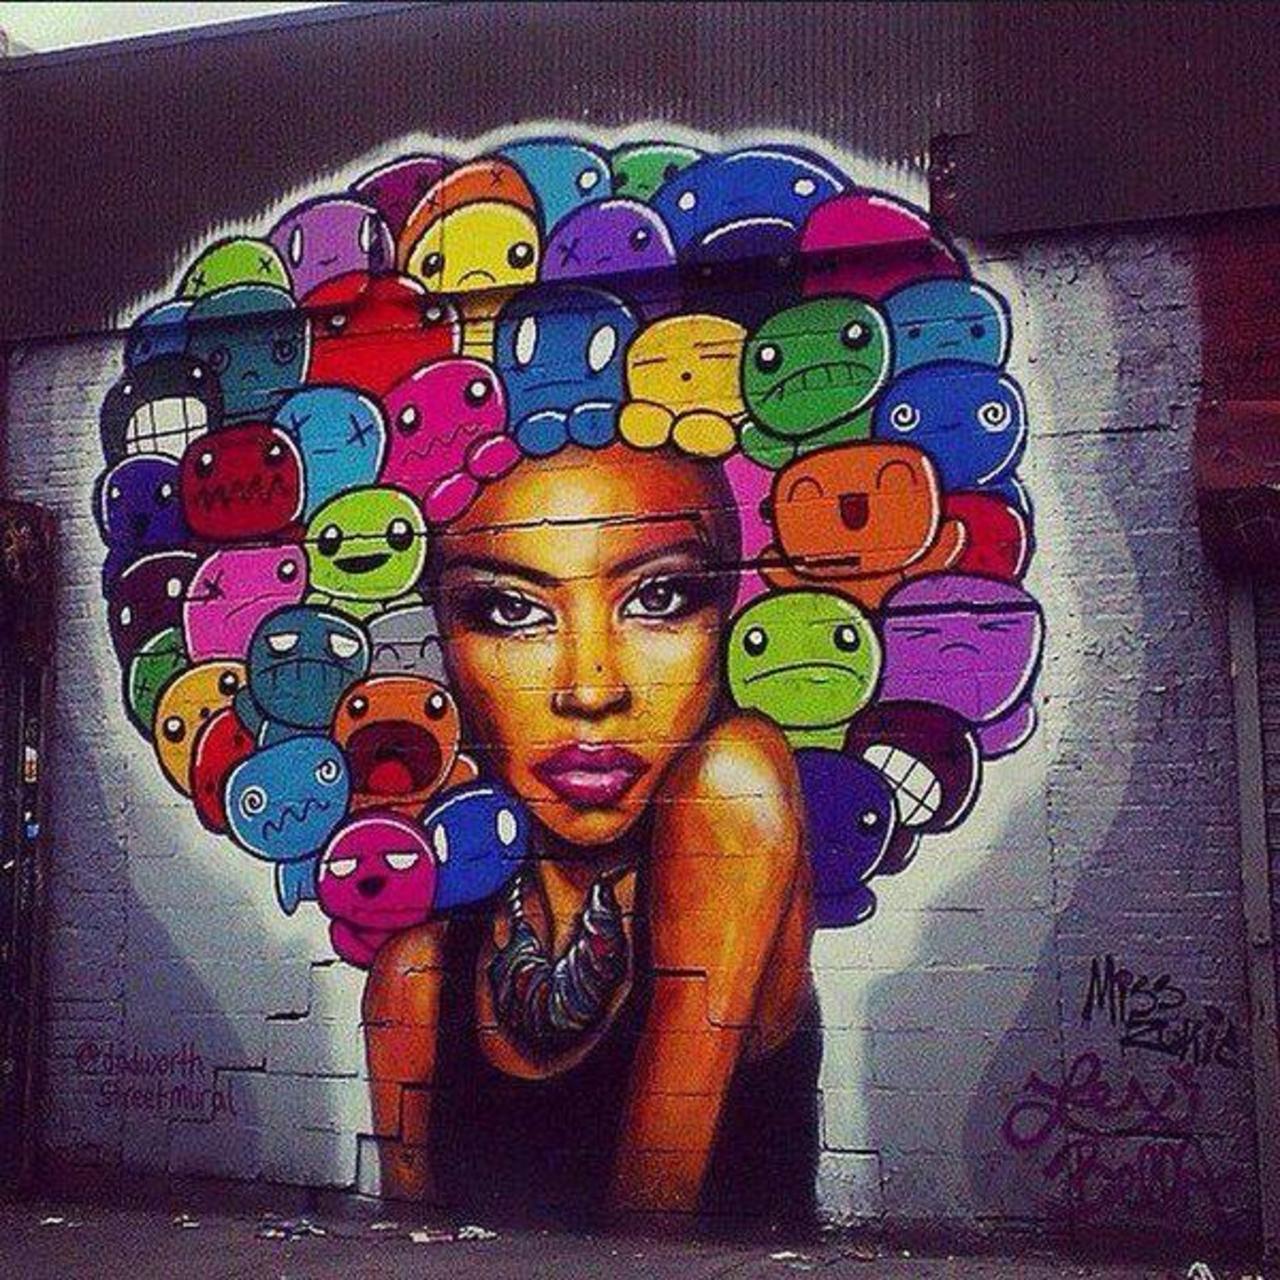 "@EseGraffiti: Artistas: Lexi Bella & Miss Zukie 
Brooklyn, NY, USA
#art #streetart #mural #graffiti http://t.co/iTb0Tr0Sth"